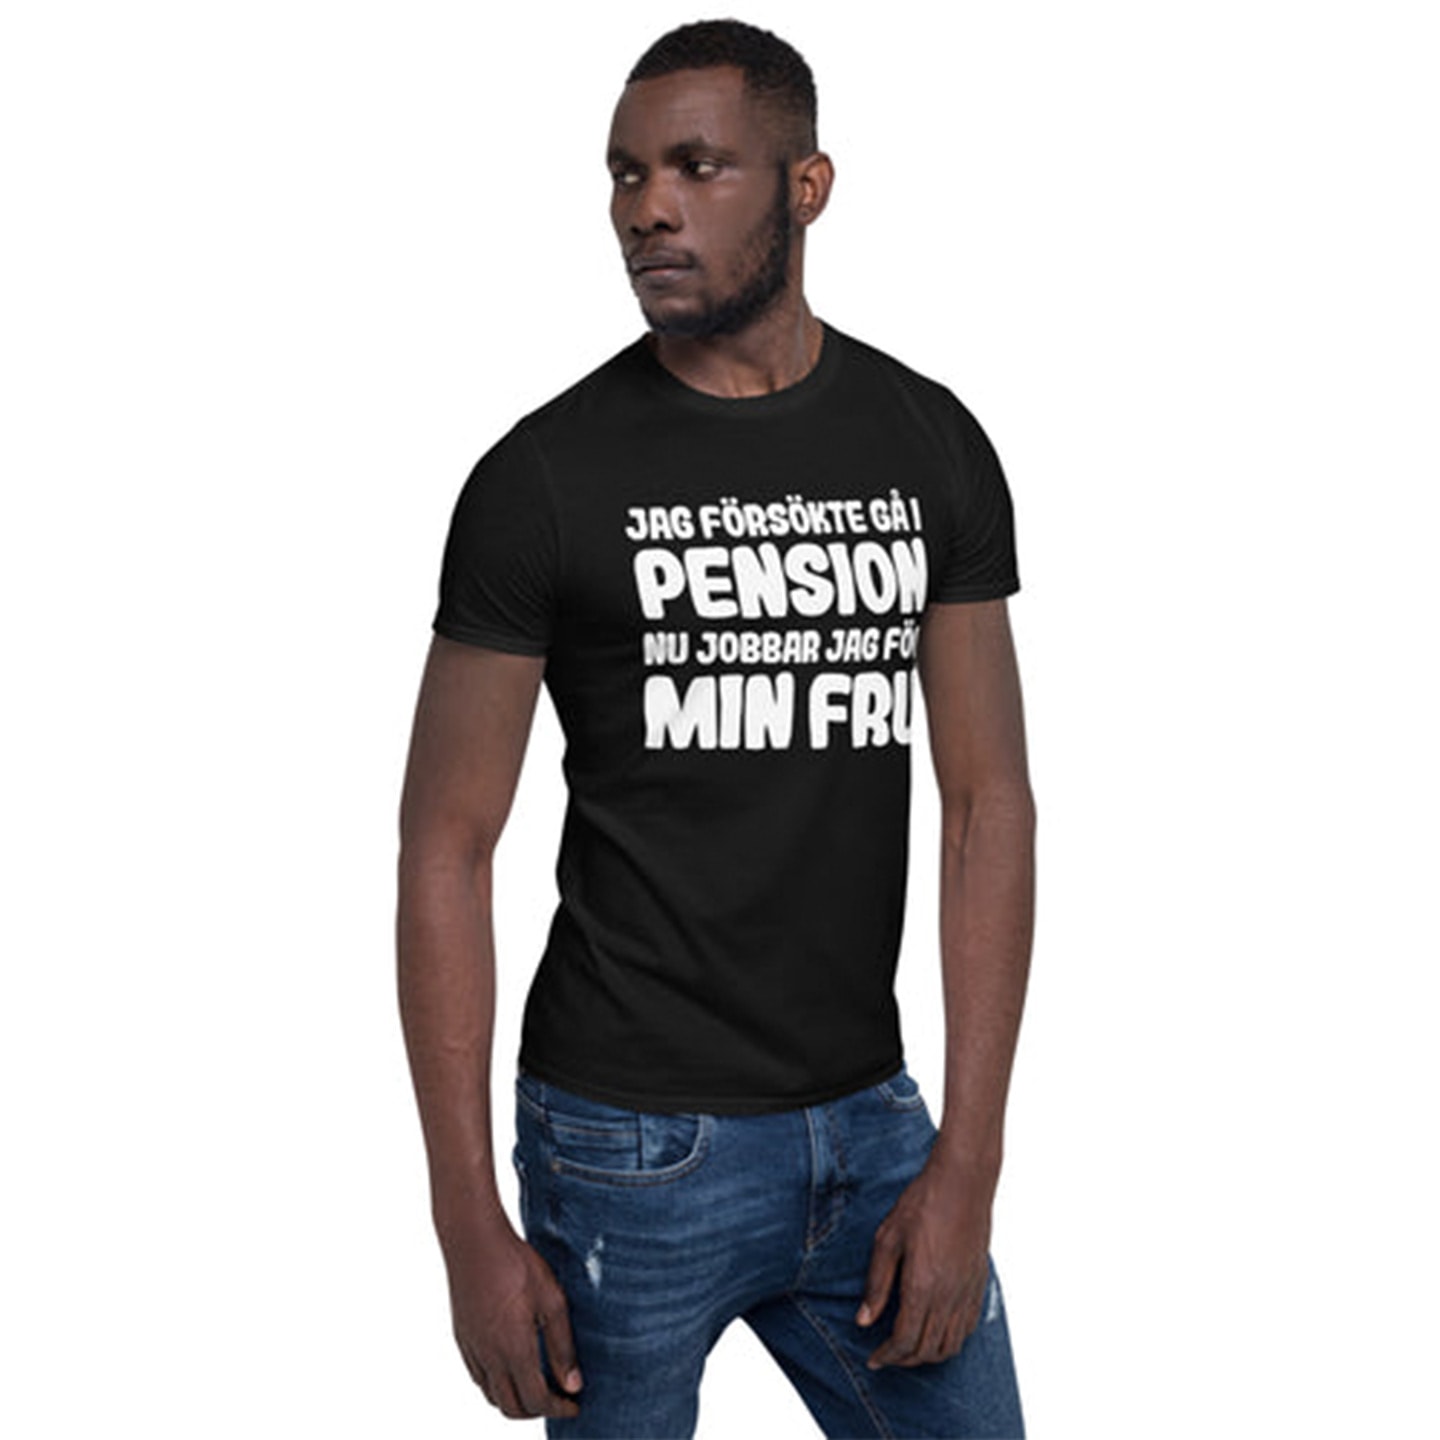 T-shirt Unisex "Jag försökte gå i pension" (1 av 3)